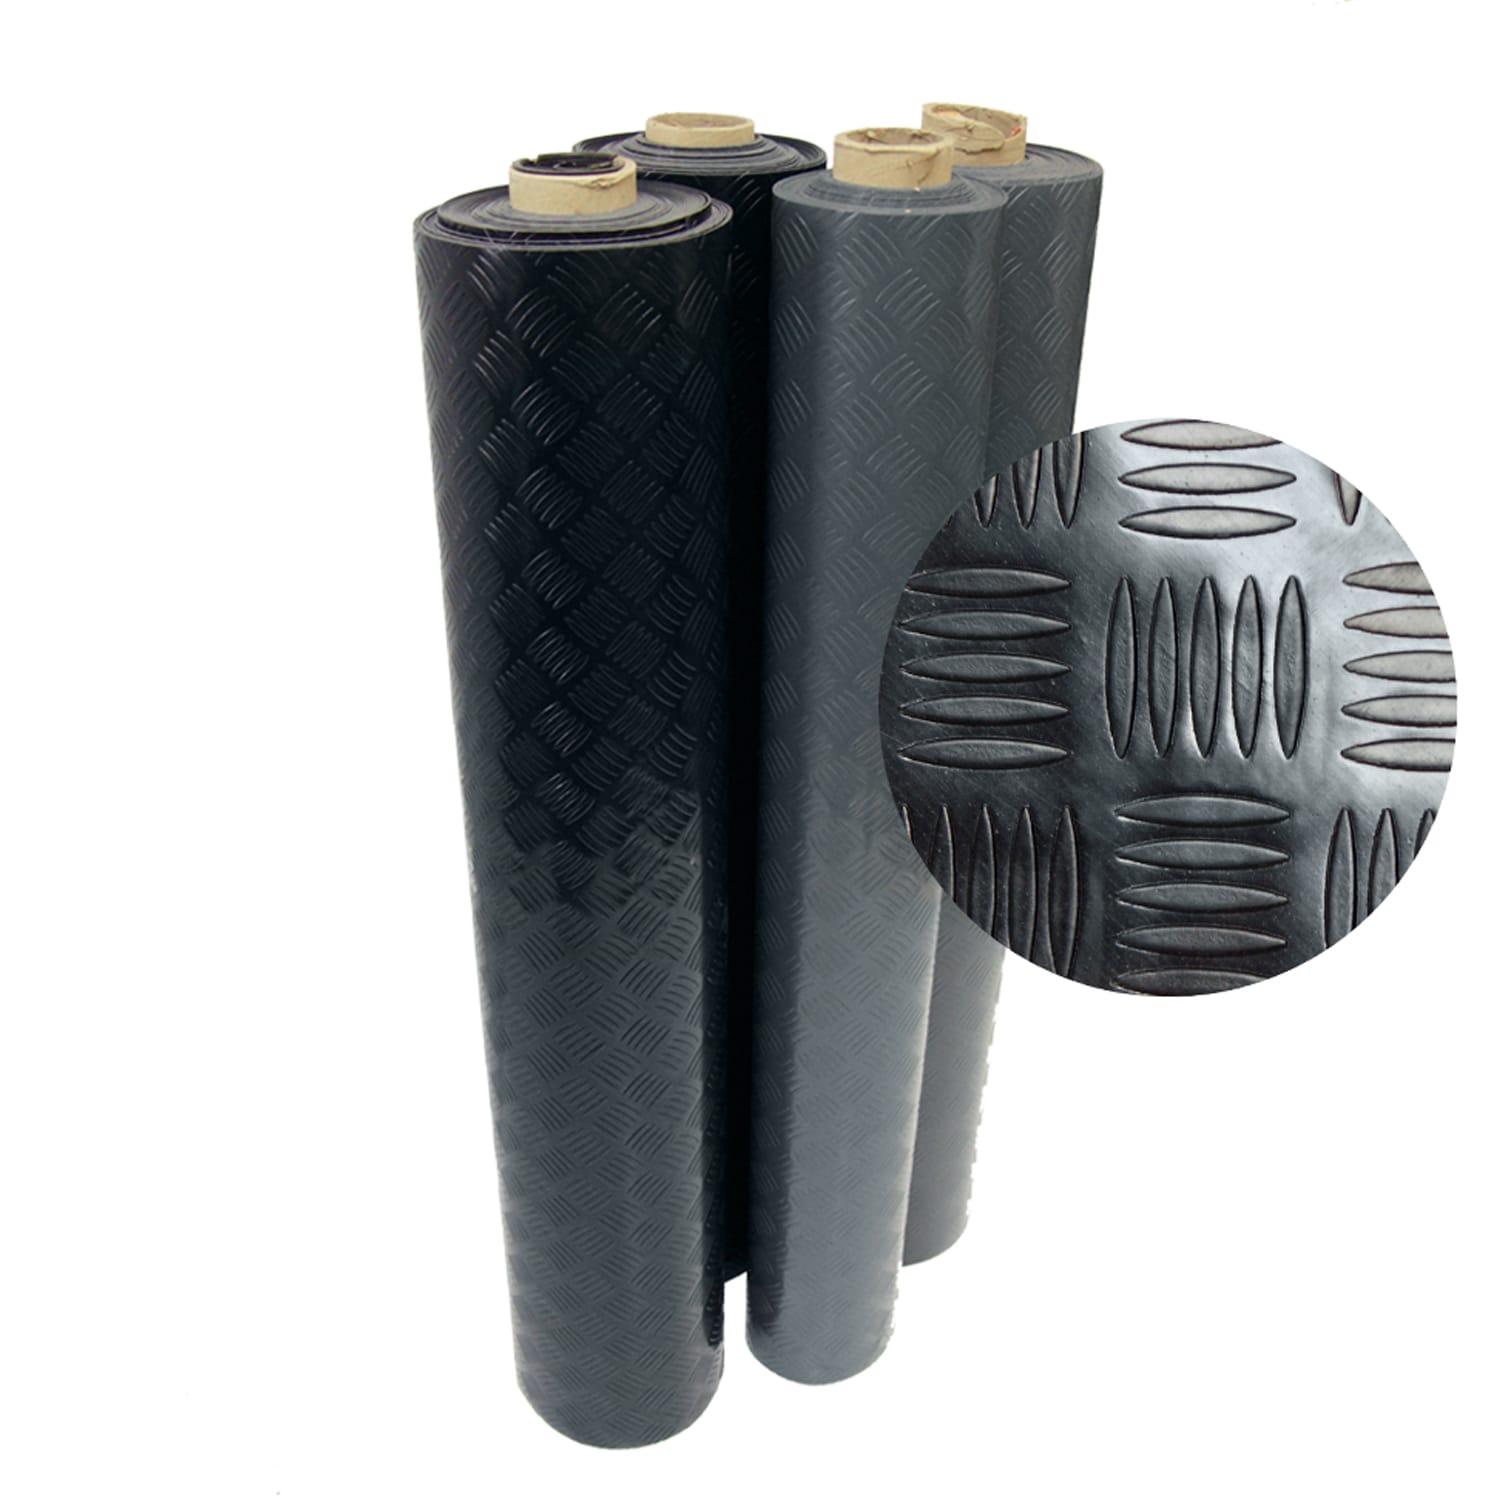 Rubber-Cal Diamond-Grip Resilient Flooring Mat - 2mm x 4ft x 9ft Rubber Flooring Rolls - Black